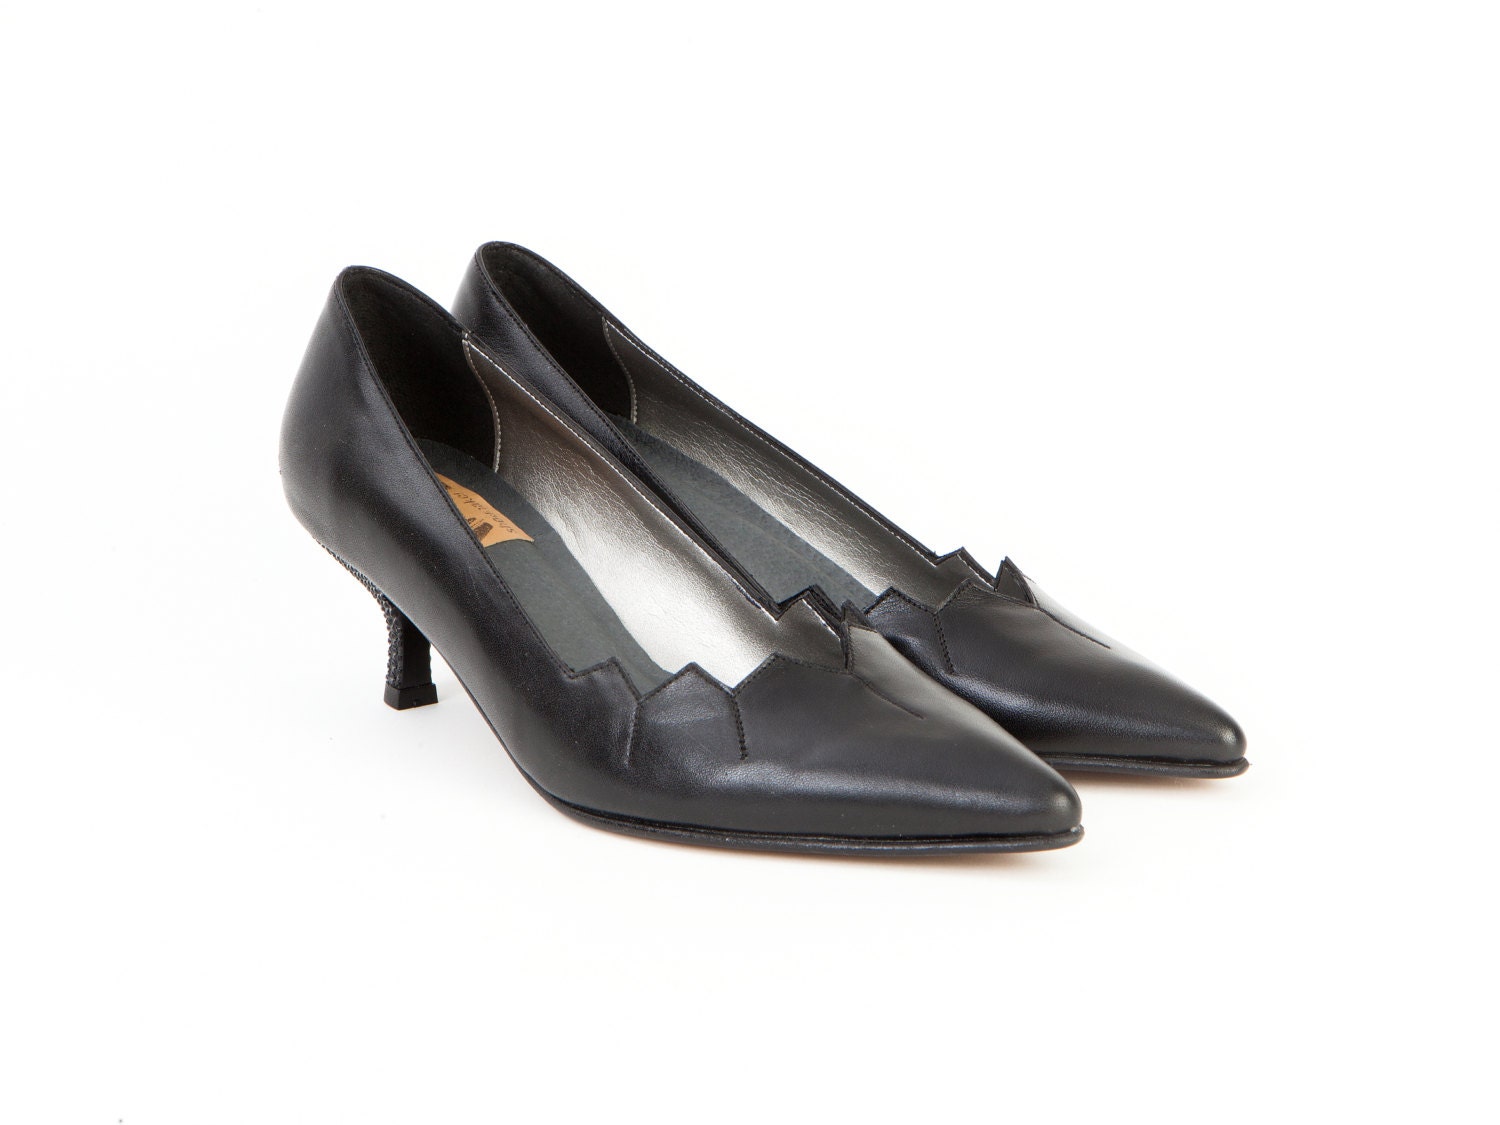 Grace Kelly Womens Leather Shoes Black Pumps Low Kitten Heels